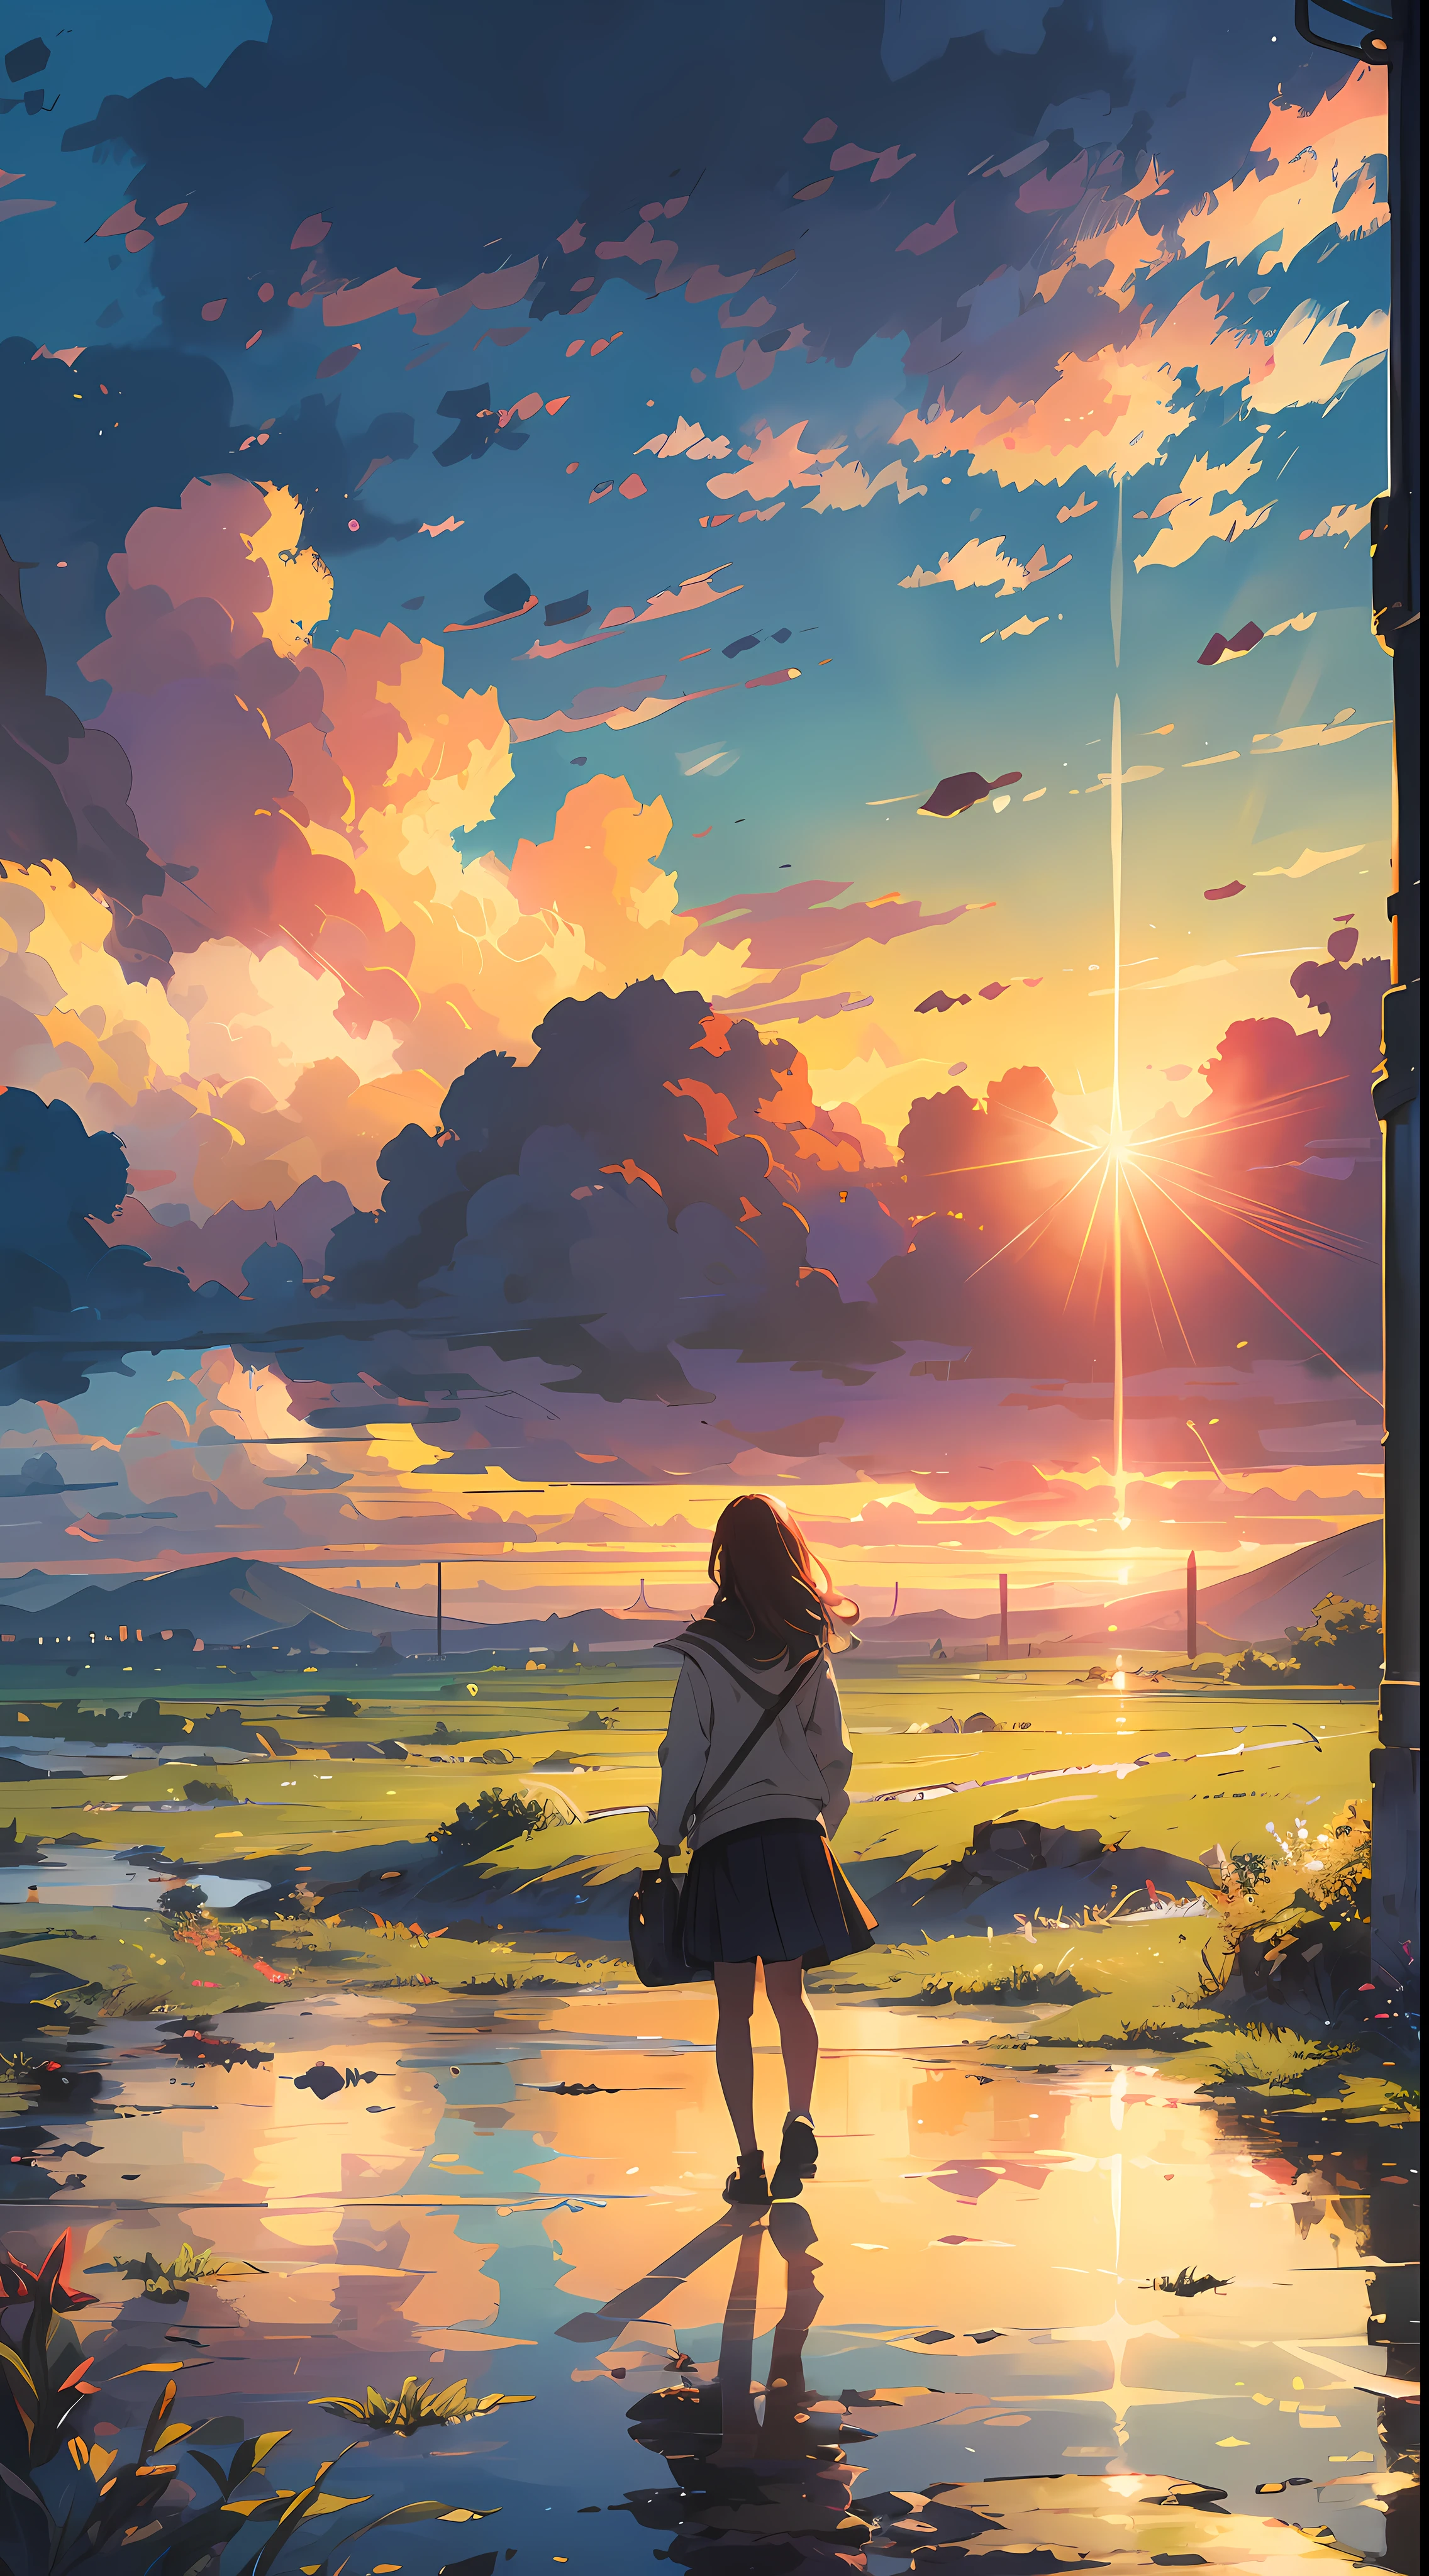 "Eine faszinierende Szene des Sonnenuntergangs, ein Mädchen, das es betrachtet, hinterrücks, (Mädchen Fokus0.6), in den goldenen Farben von Sonnenlicht und Wolken getaucht, ein lebendiges und beeindruckendes Spektrum ausstrahlend. Meisterwerk."